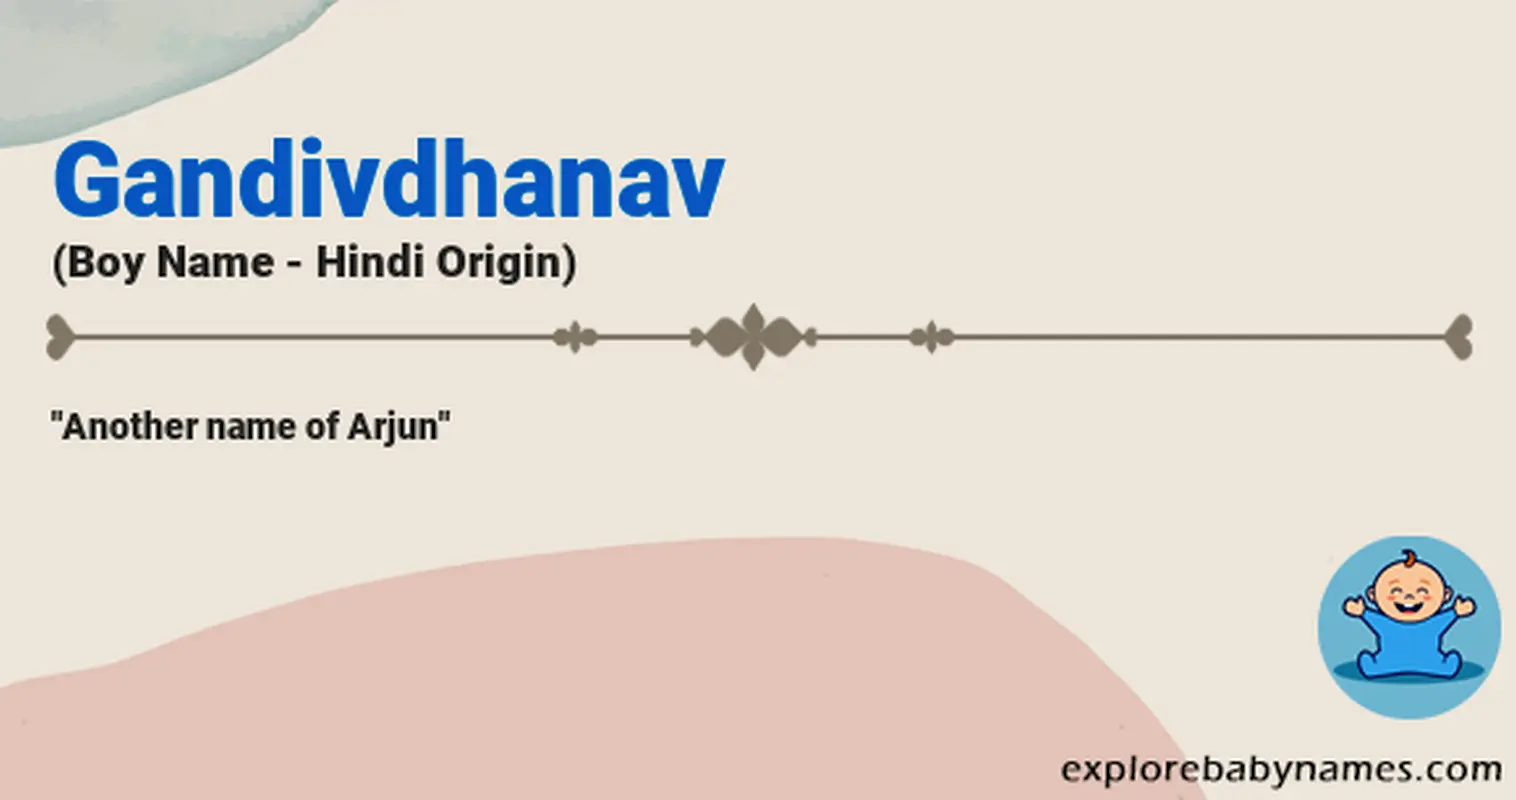 Meaning of Gandivdhanav